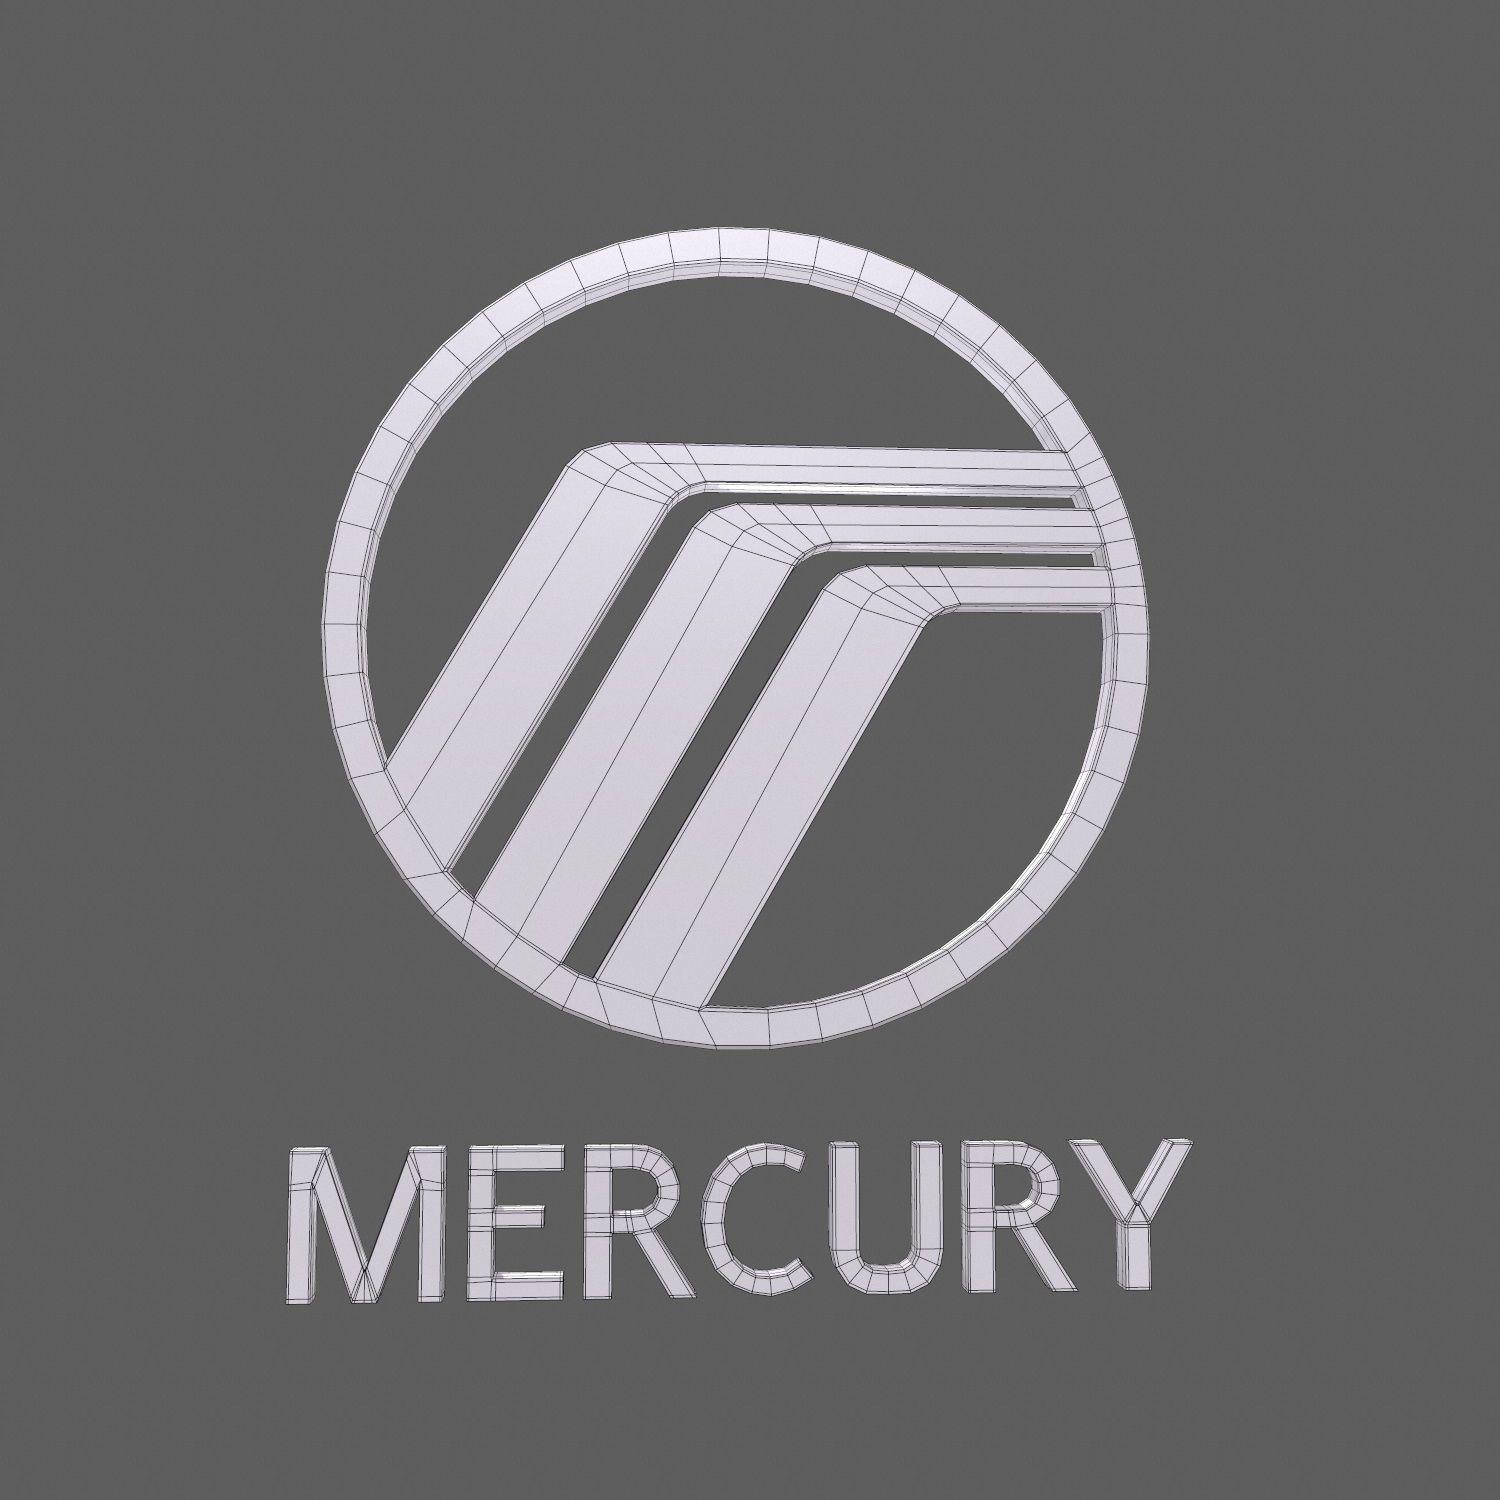 Mercury Car Logo - Mercury car logo keychain 3D model